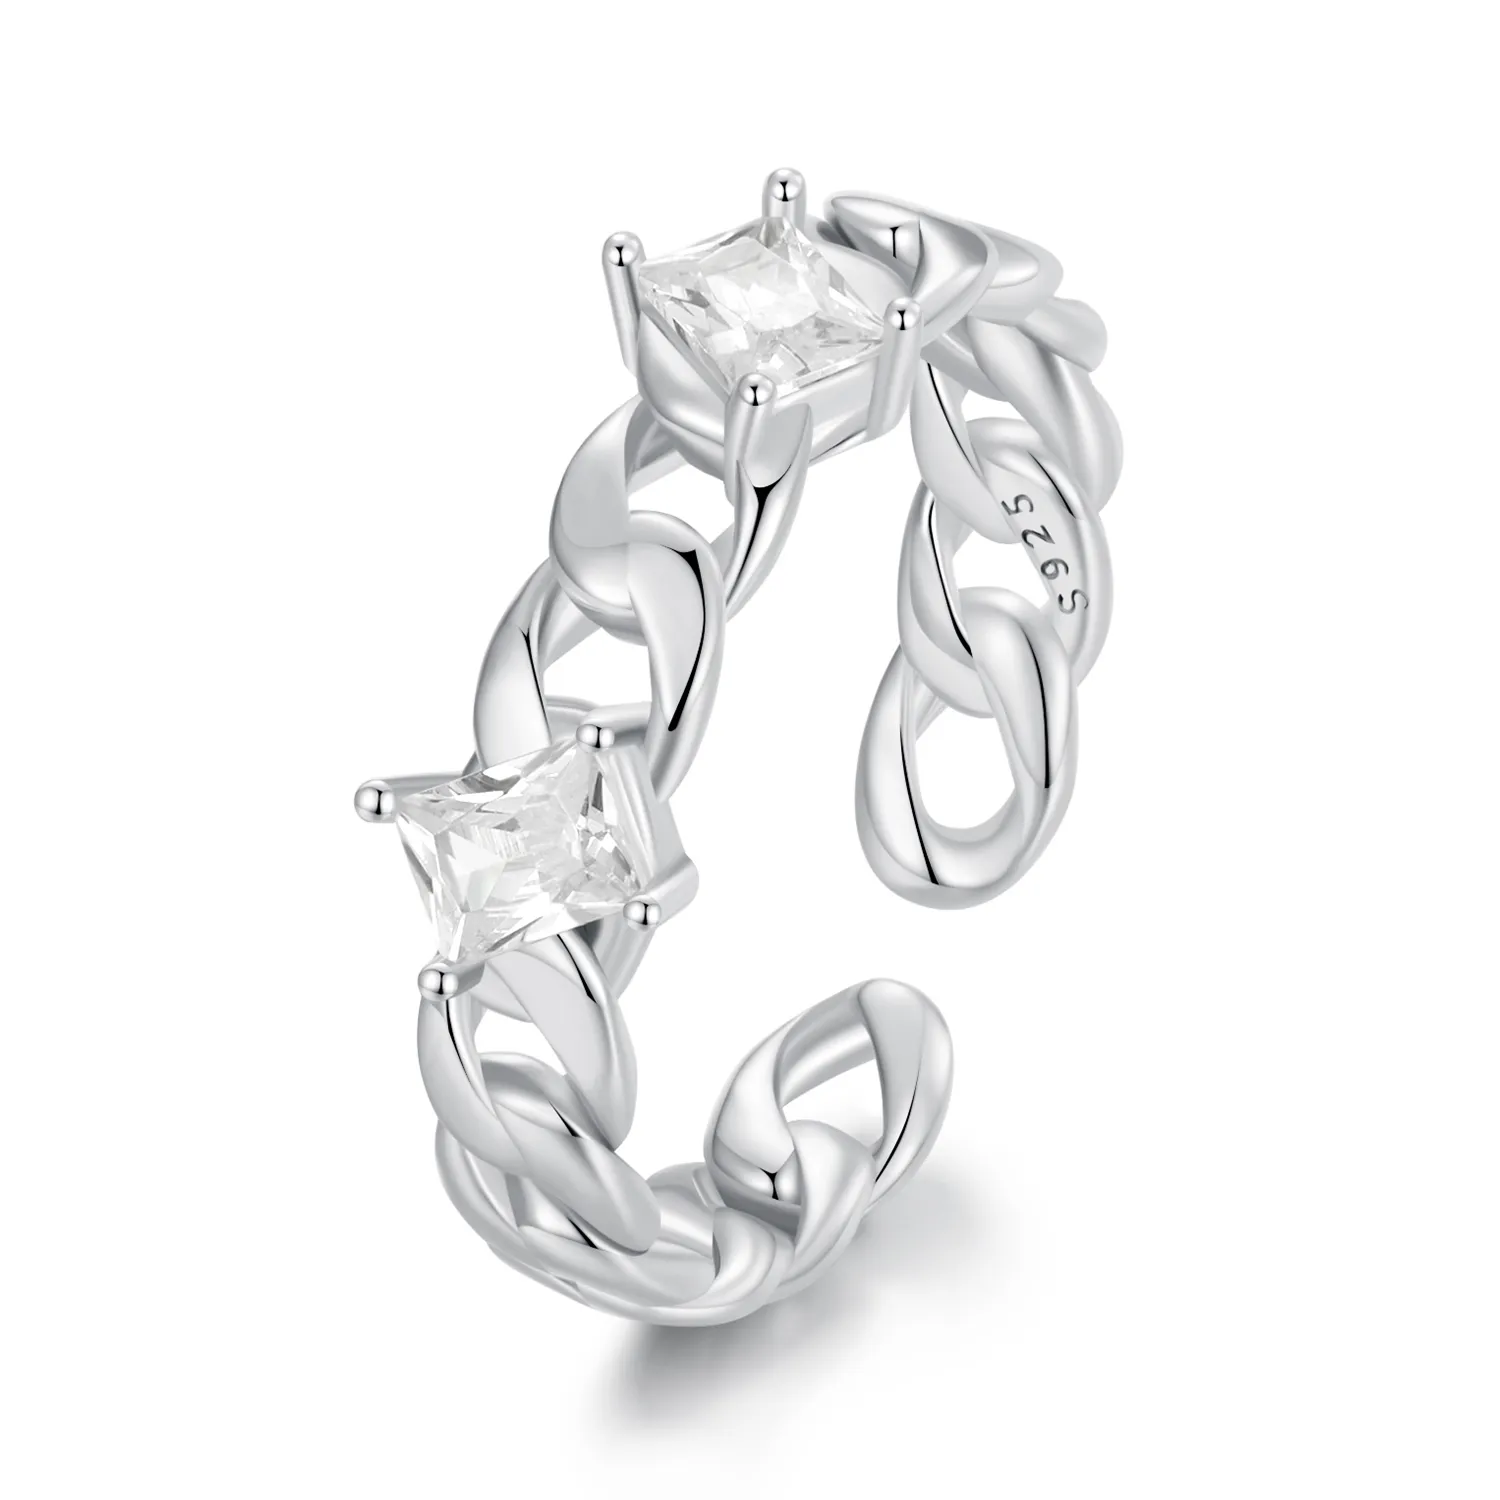 Pandora Style Chain Open Ring - SCR977-E